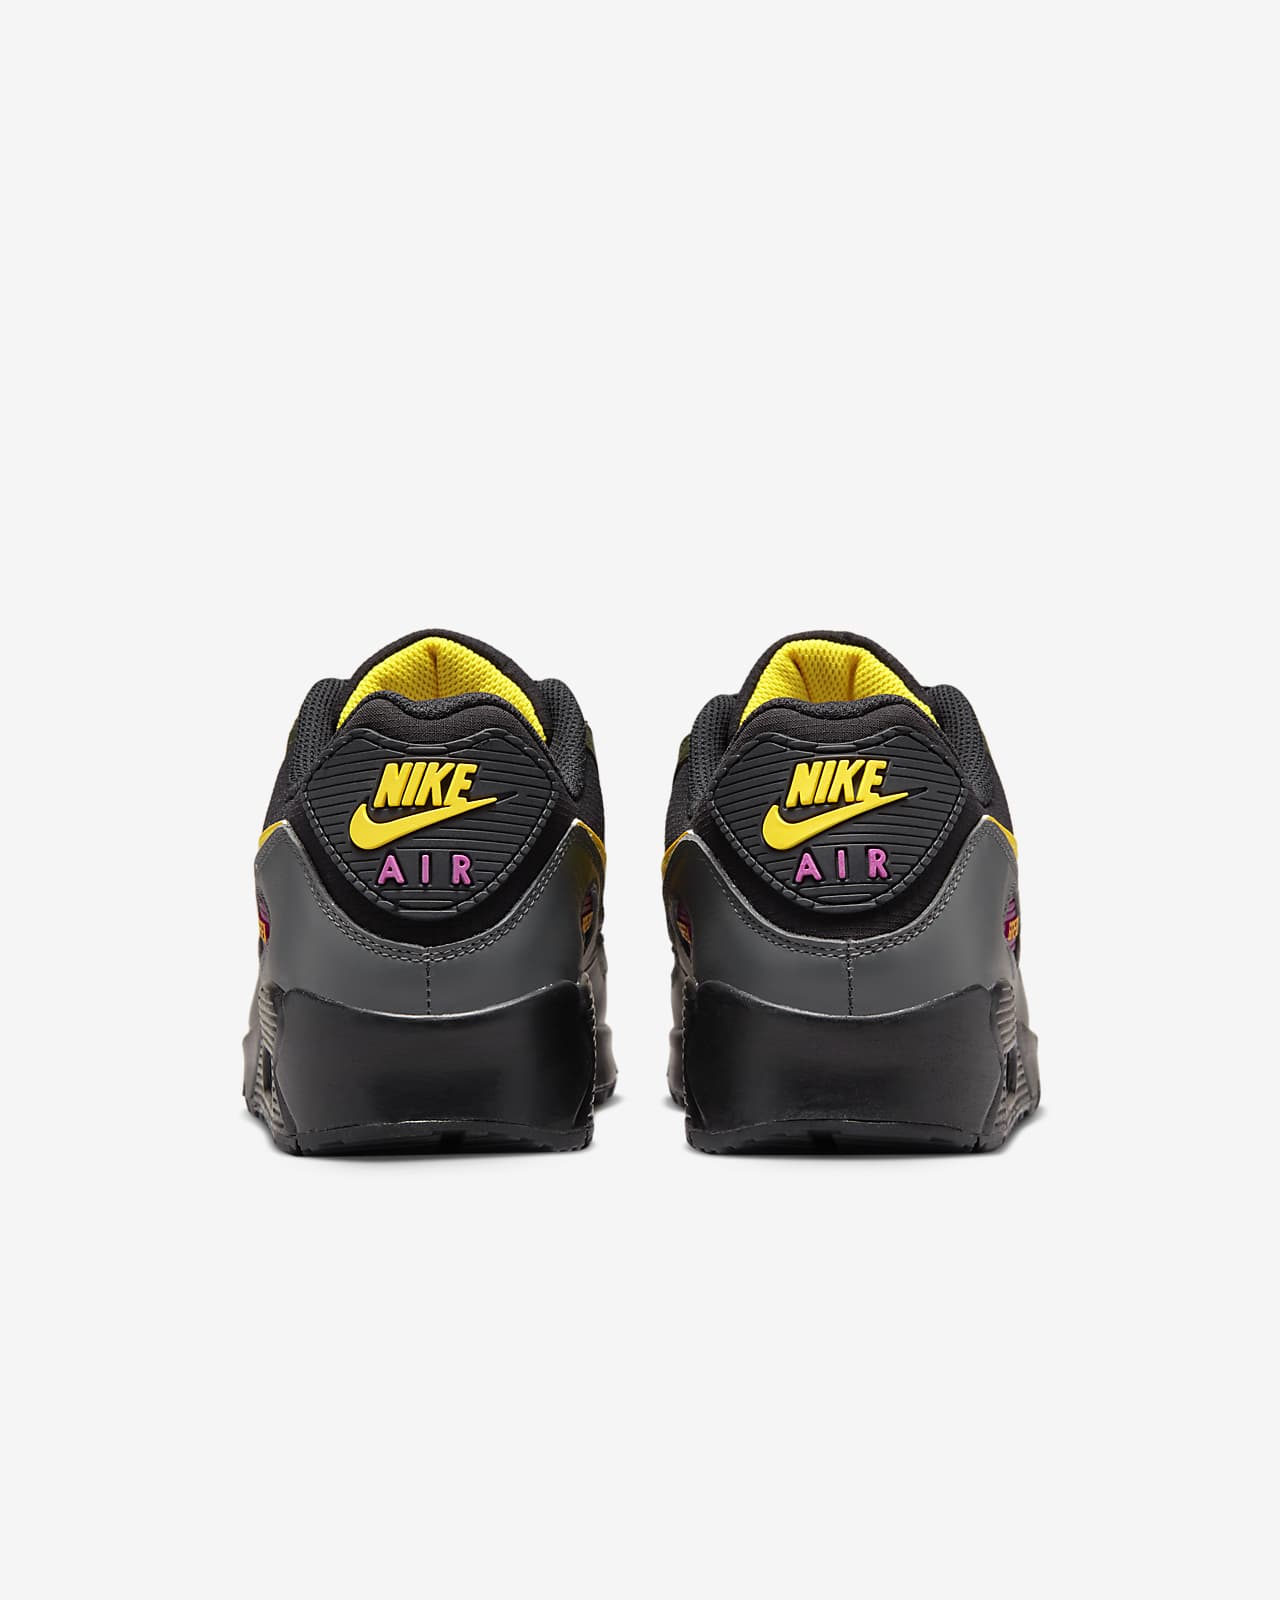 Uitleg weduwe Schuldenaar Nike Air Max 90 GTX Men's Shoes. Nike.com